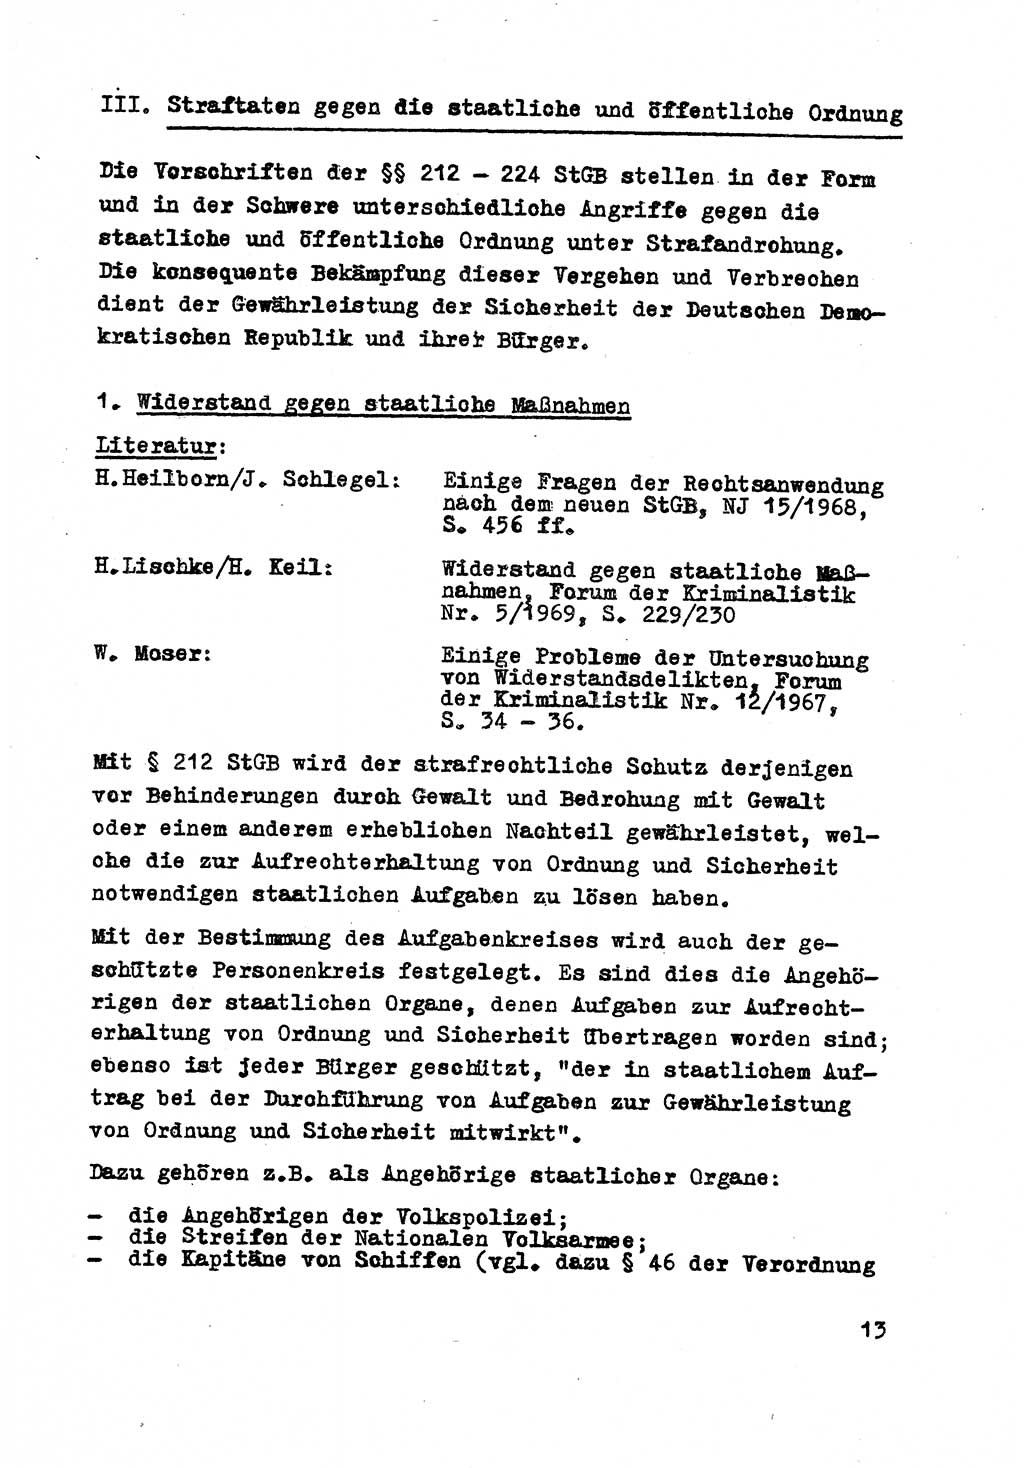 Strafrecht der DDR (Deutsche Demokratische Republik), Besonderer Teil, Lehrmaterial, Heft 8 1970, Seite 13 (Strafr. DDR BT Lehrmat. H. 8 1970, S. 13)